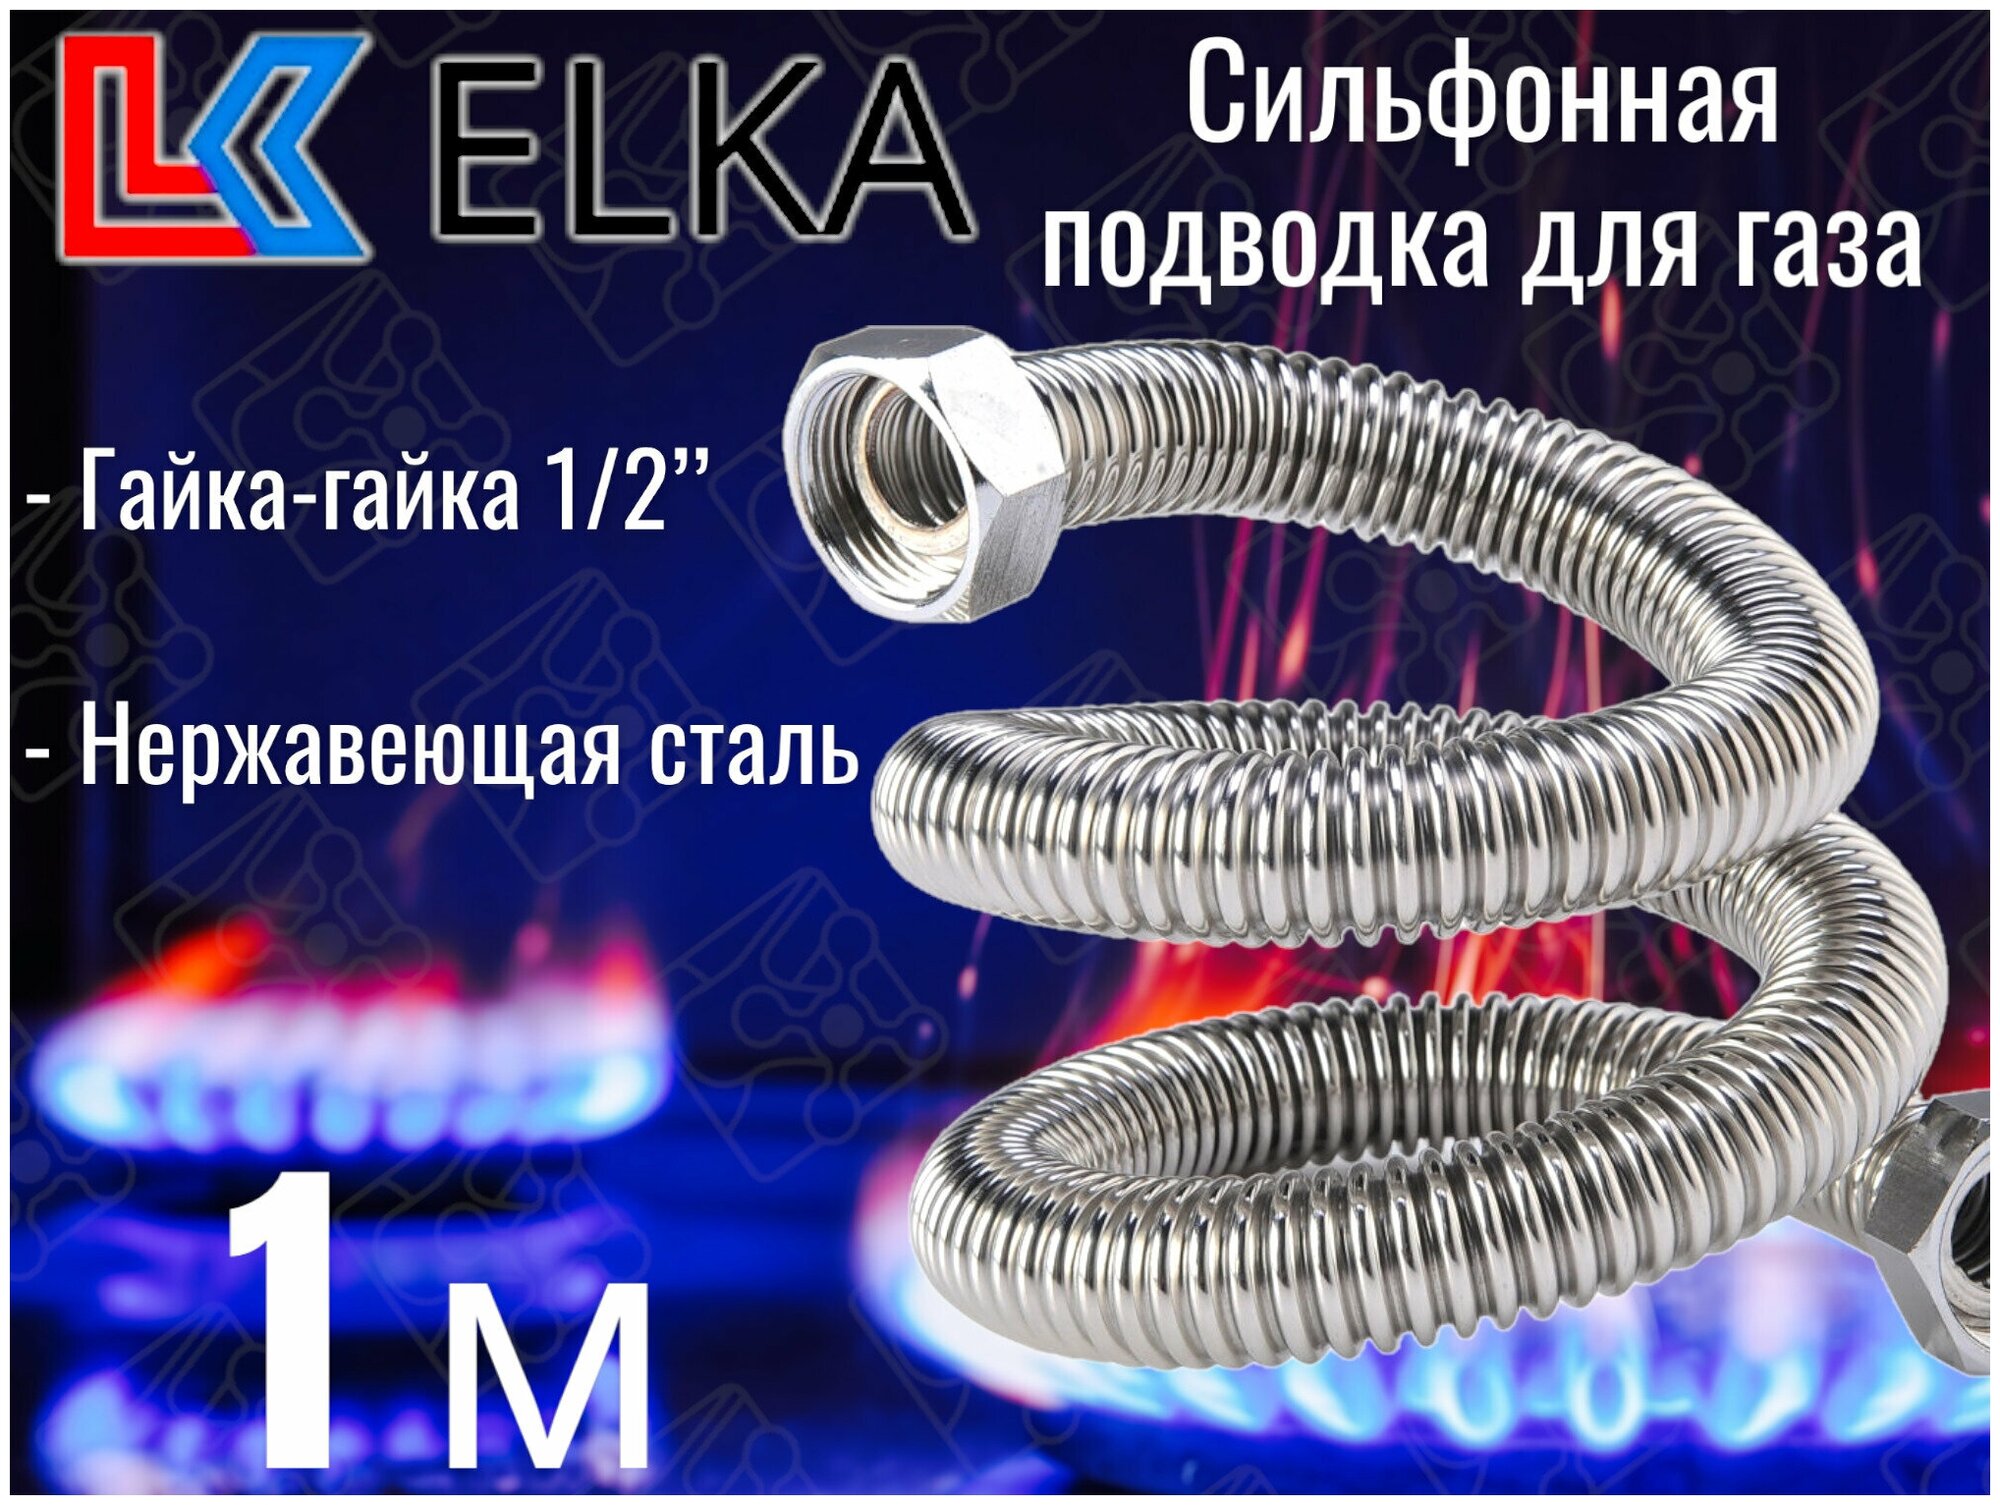 Сильфонная подводка для газа 1 м ELKA 1/2" г/г (в/в) / Шланг газовый / Подводка для газовых систем 100 см